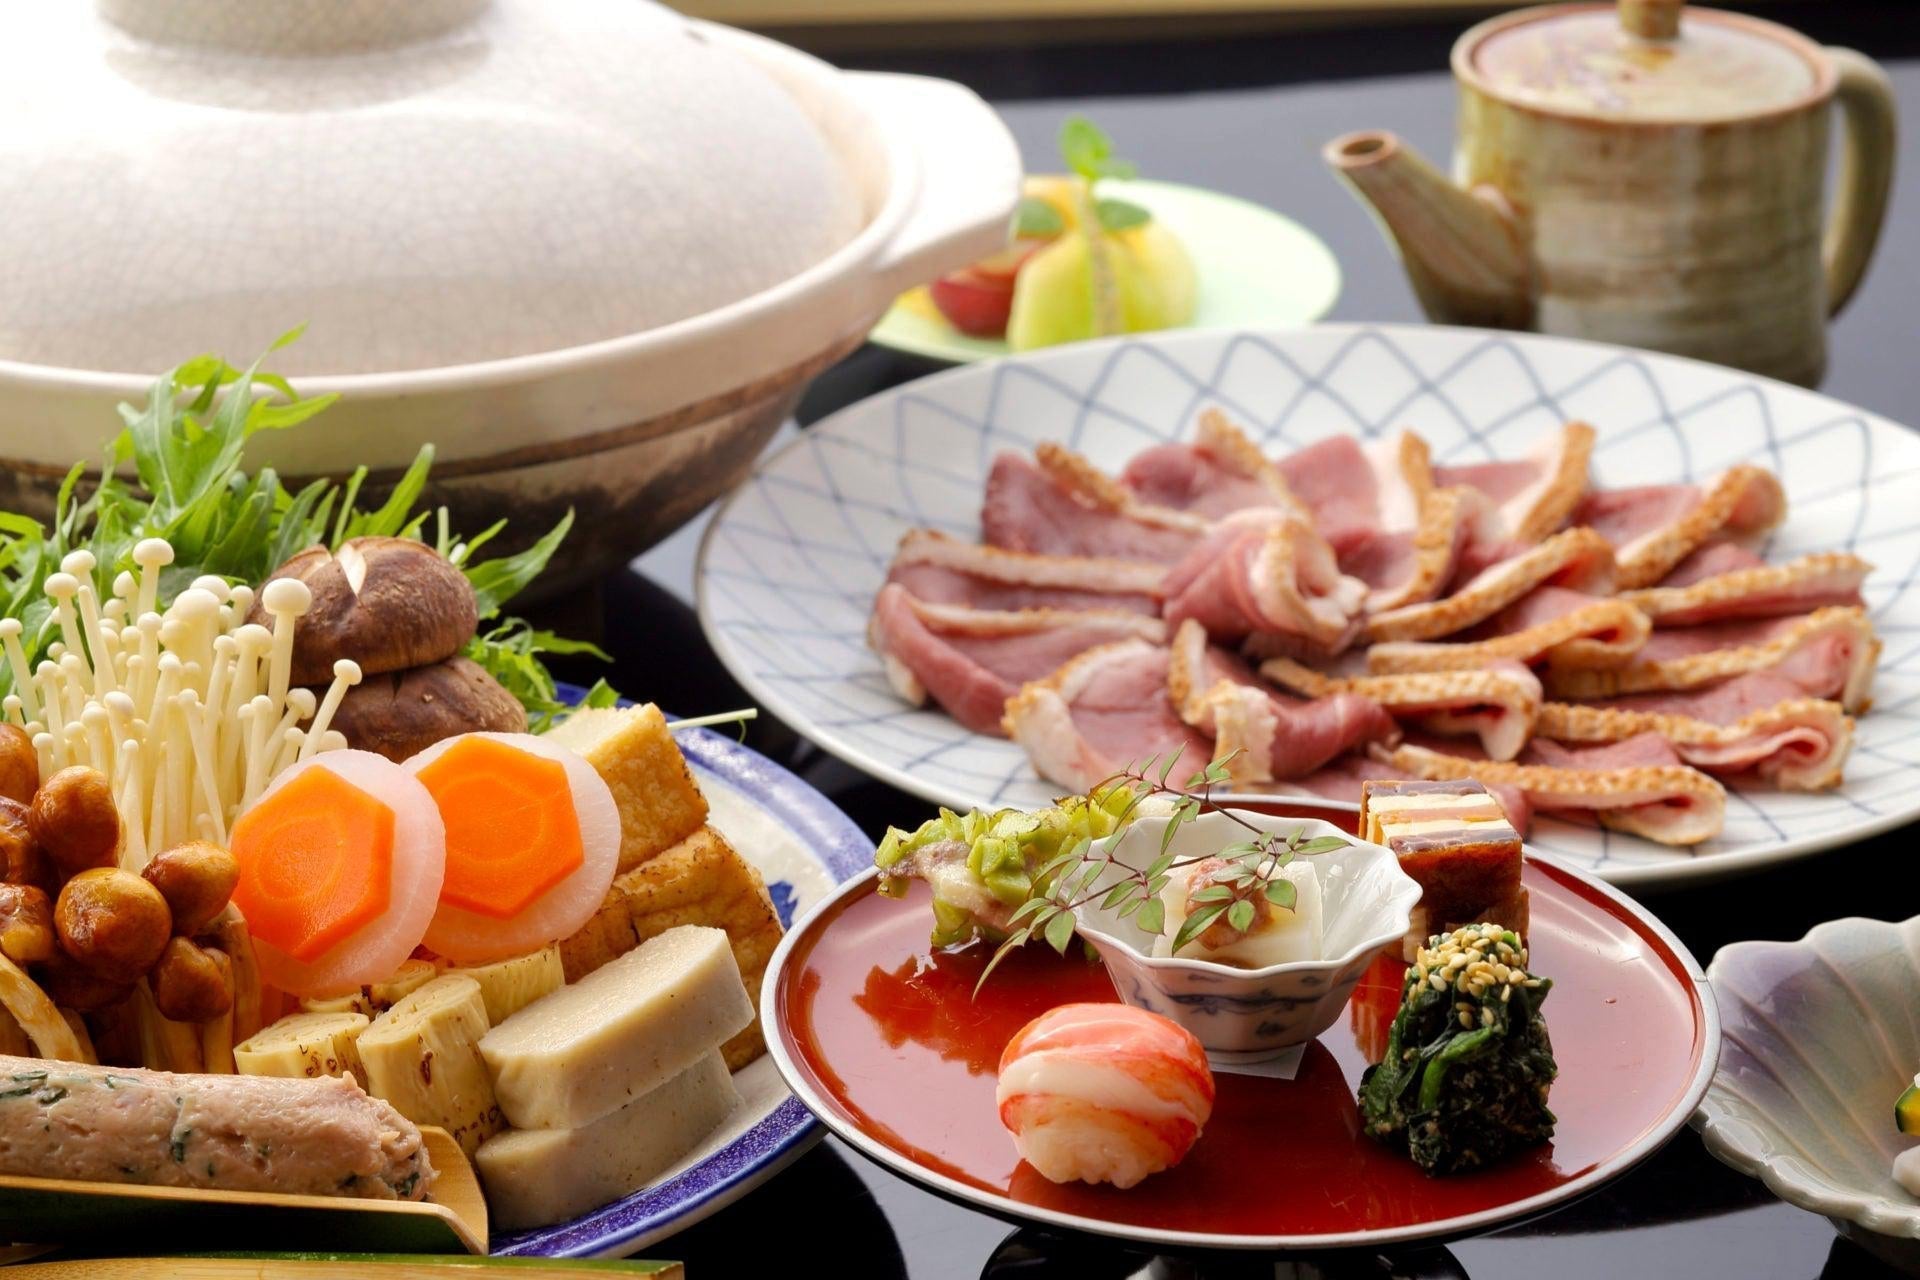 http://japanesetaste.com/cdn/shop/articles/nabe-the-easy-japanese-hotpot-for-any-occasion-japanese-taste.jpg?v=1694487260&width=5760